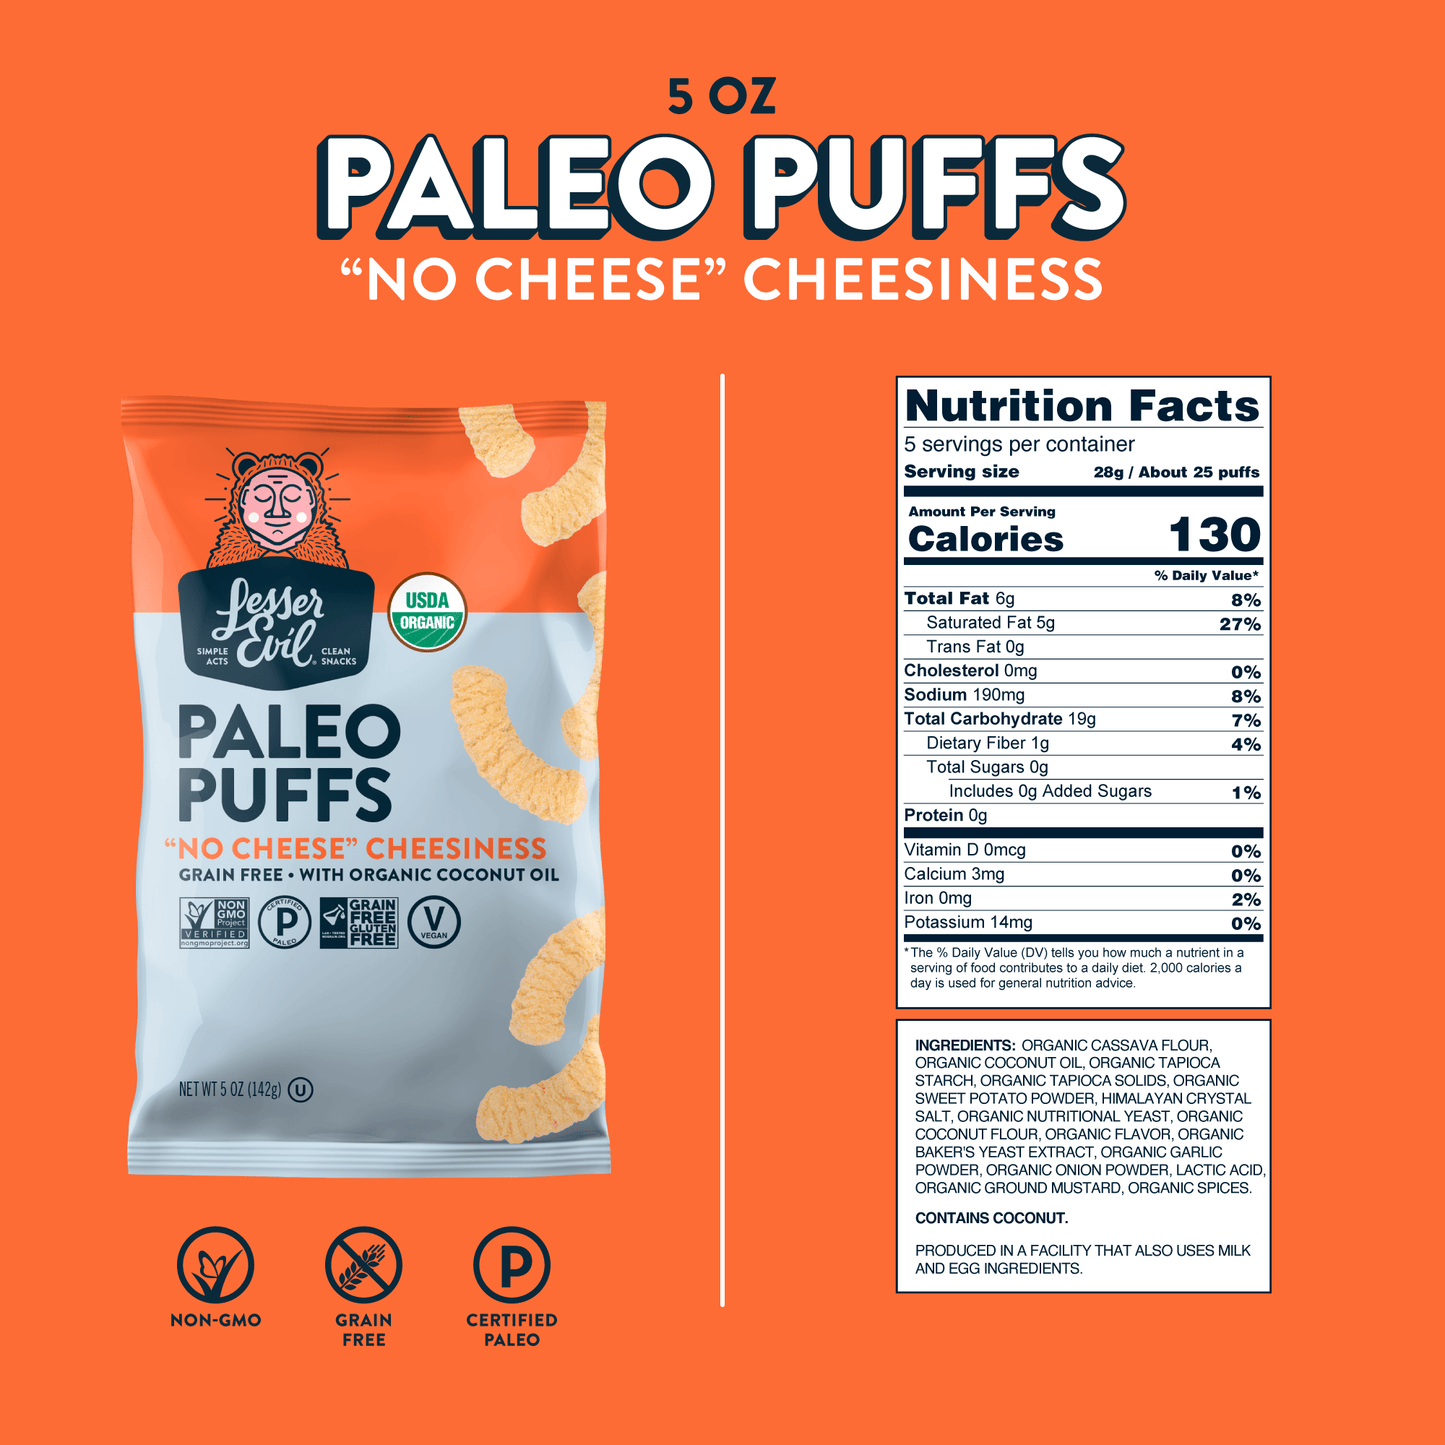 "No Cheese" Cheesiness Paleo Puffs